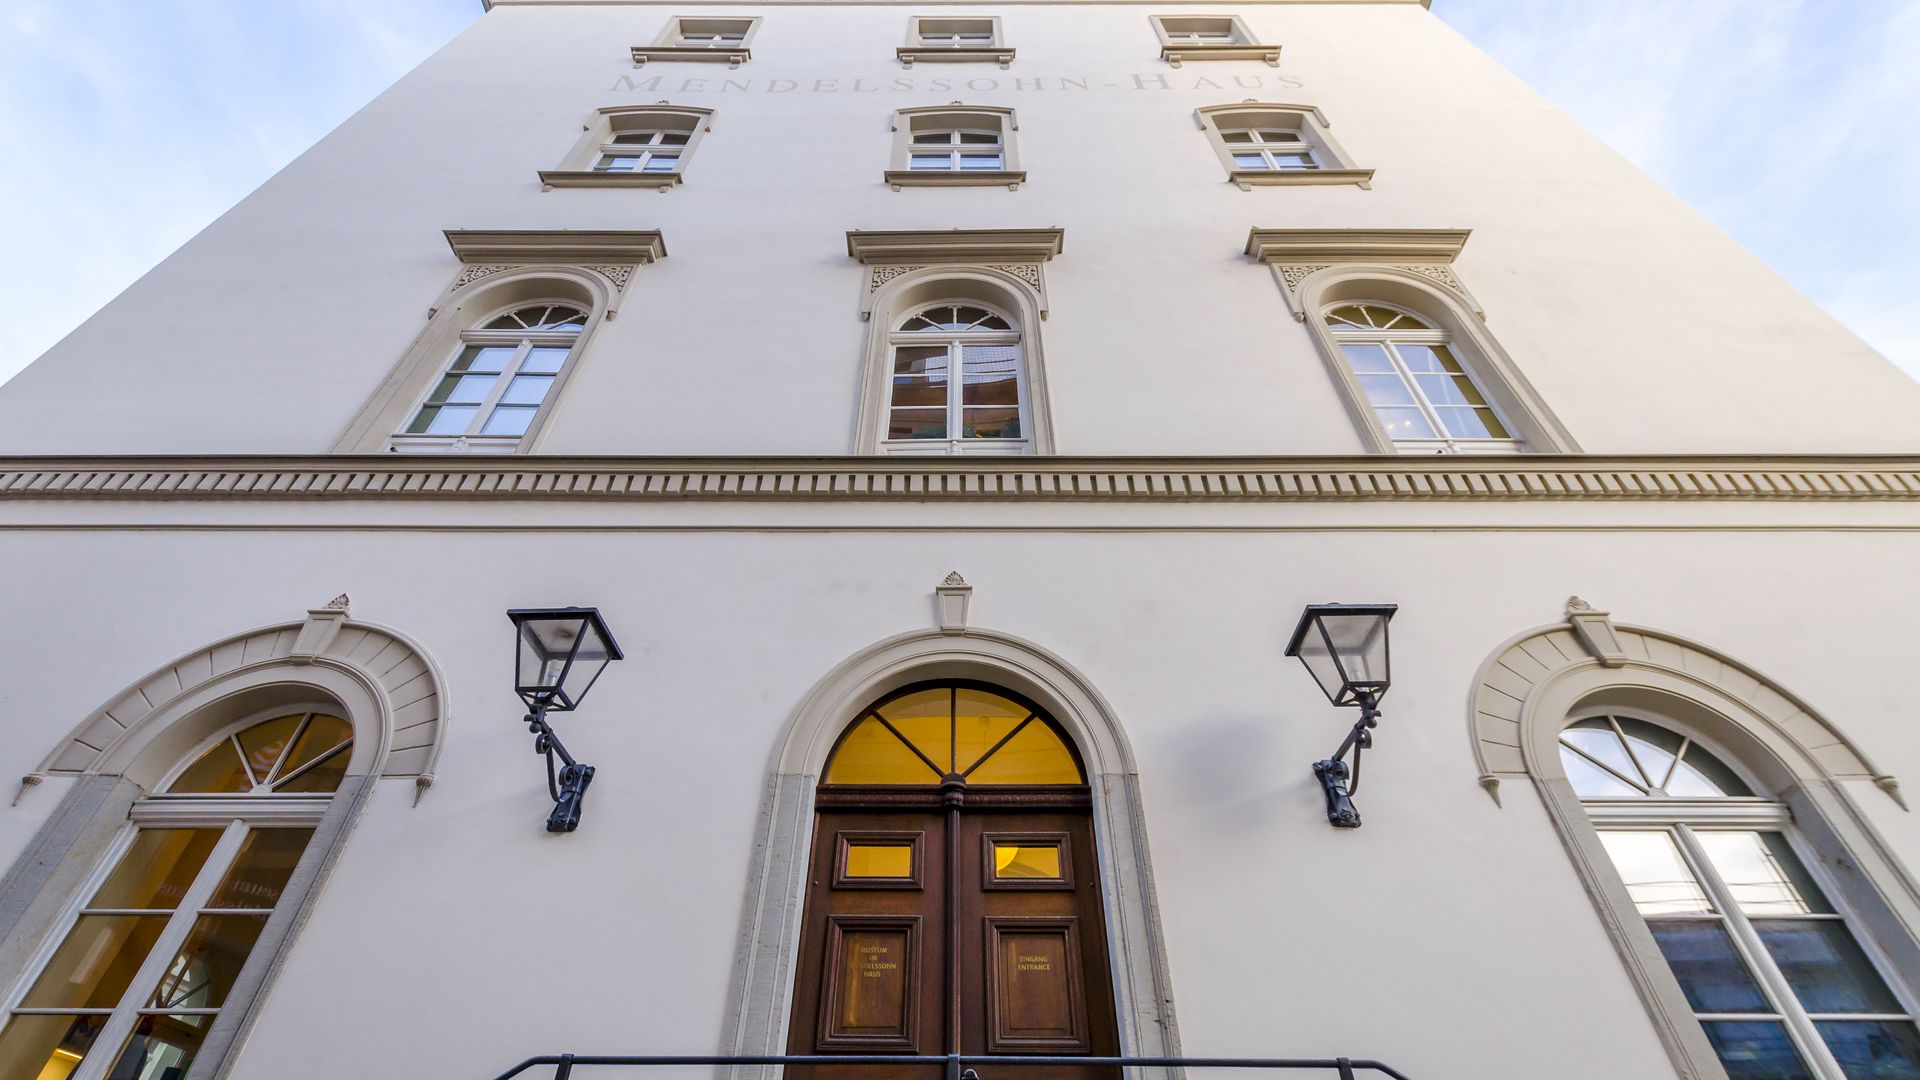 Blick auf die Fassade des Mendelssohn Hauses, das ein Standort der Notenspur der Musikstadt Leipzig ist und in dem sich ein Museum zum Leben und Wirken von Felix Mendelssohn Bartholdy befindet, Kultureinrichtung, Sehenswürdigkeiten